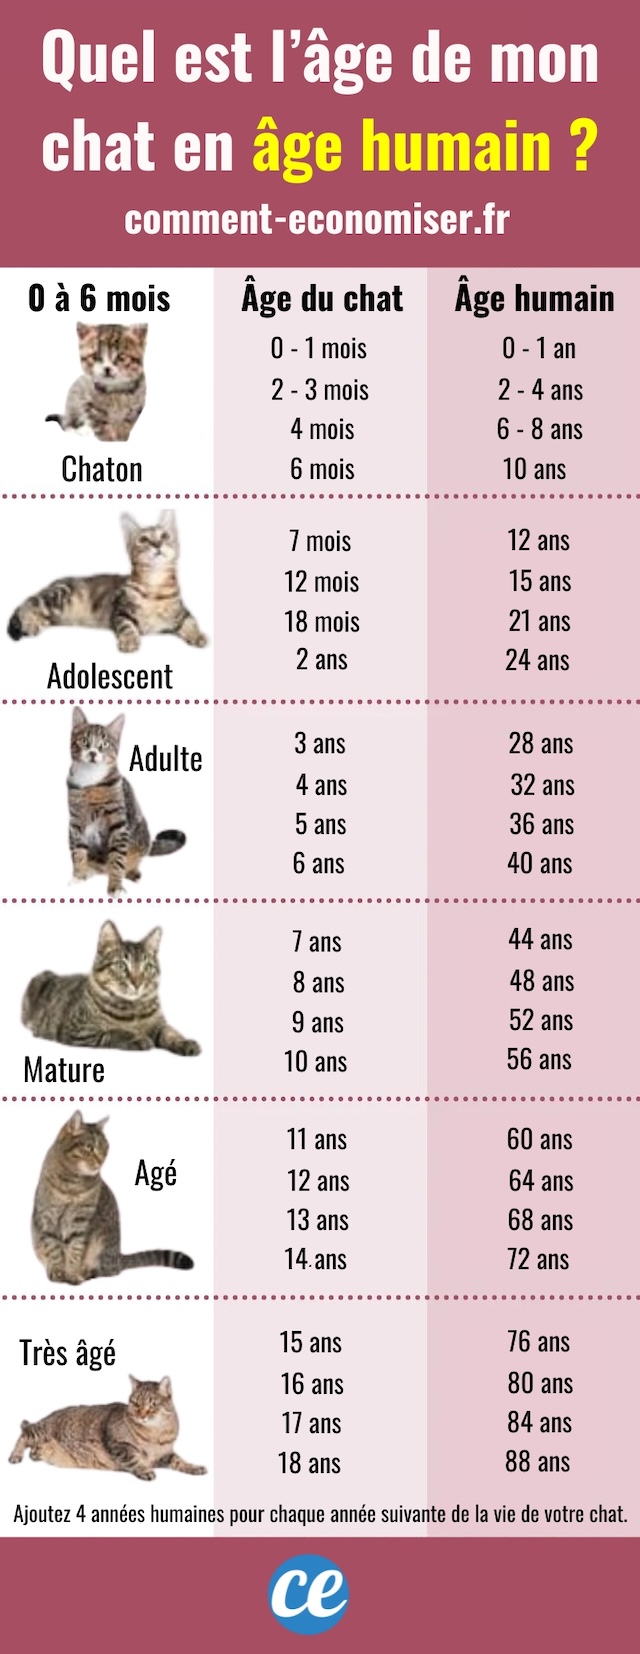 Le tableau pour calculer l'âge de votre chat en humain